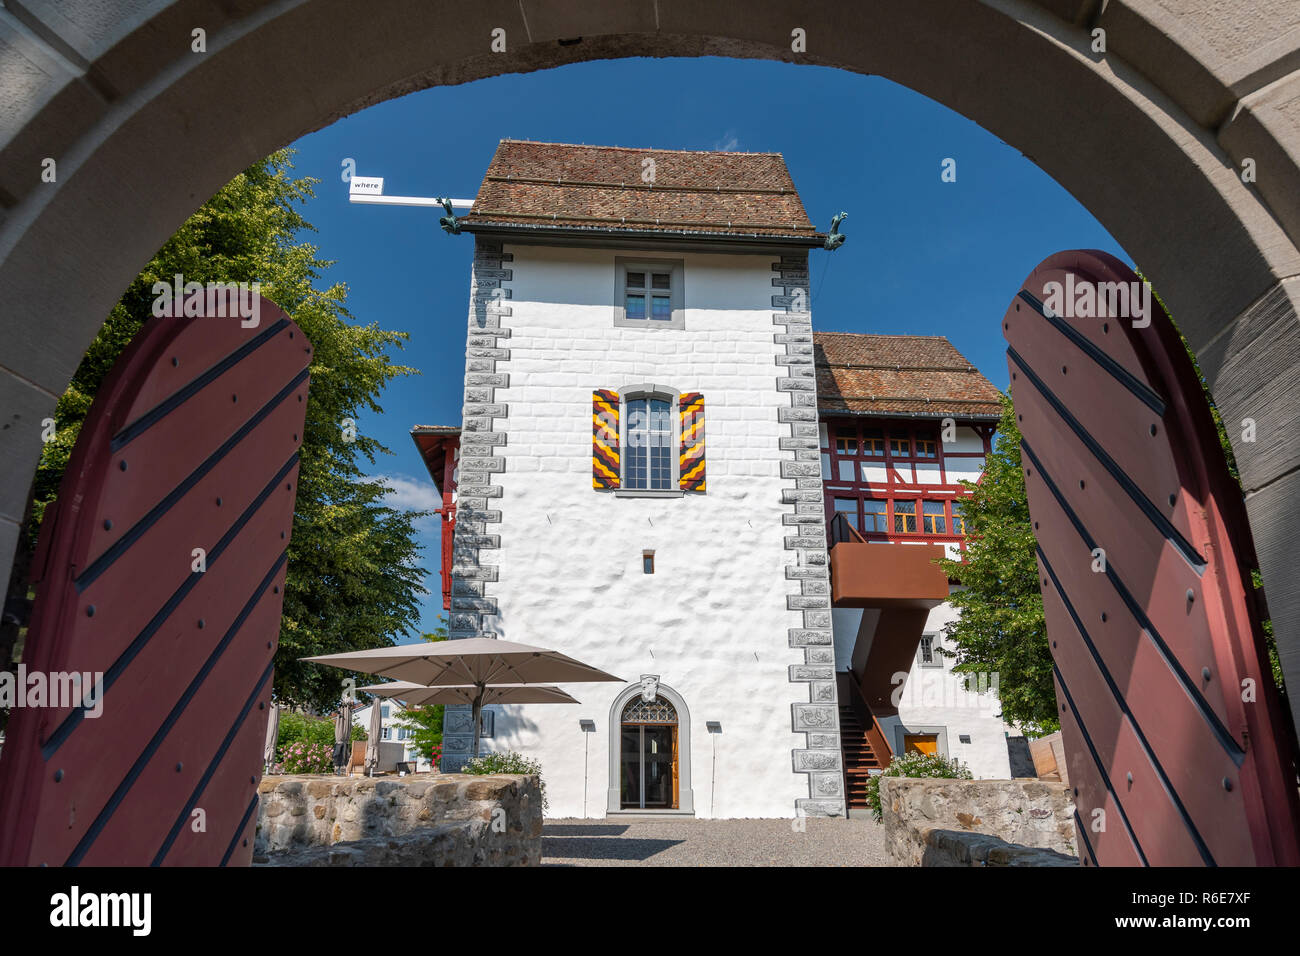 Zug château, un château dans la municipalité de Zoug du canton de Zoug en Suisse Banque D'Images